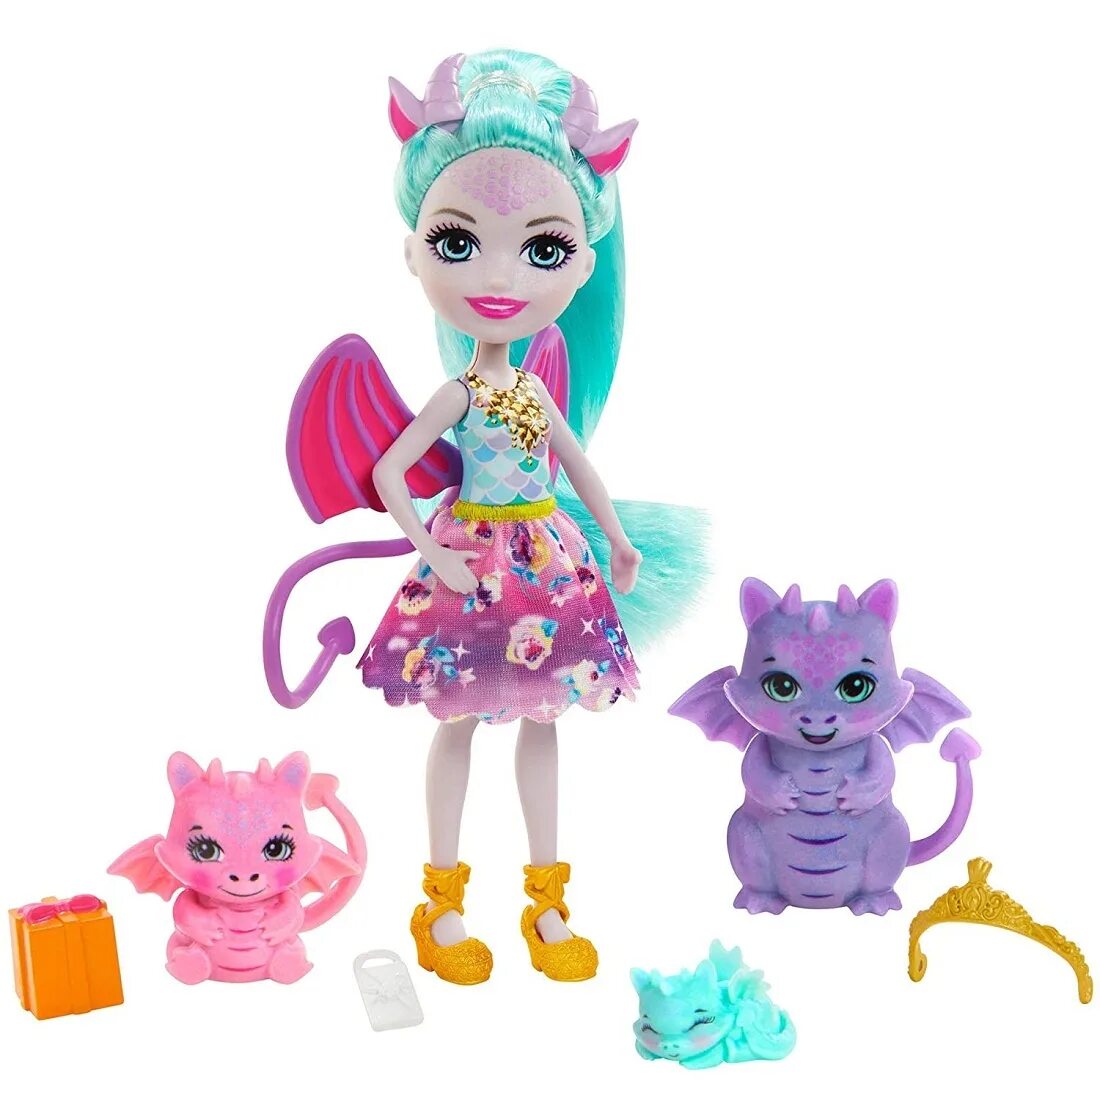 Энчантималс куклы Роял. Игровой набор Mattel Royal Enchantimals семья Дианны дракон gyj09. Энчантималс куклы Роял Роял.